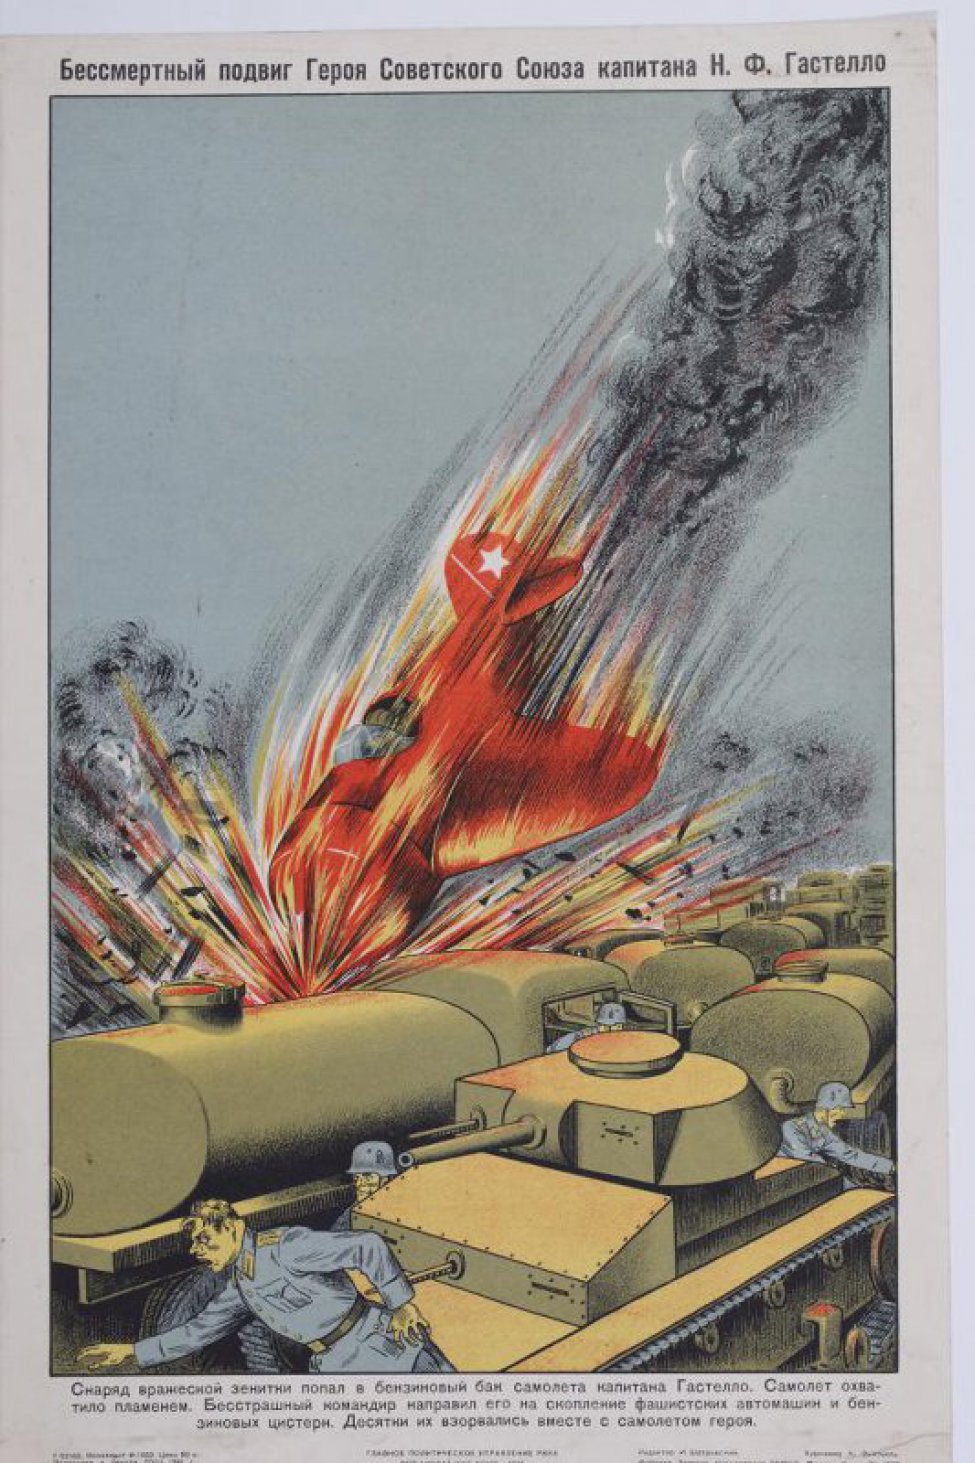 Изображены фашистские автомашины  с цистернами и падающий горящий советский самолет с летчиком Гастелло.Впереди танк, у которого мечутся фашисты.